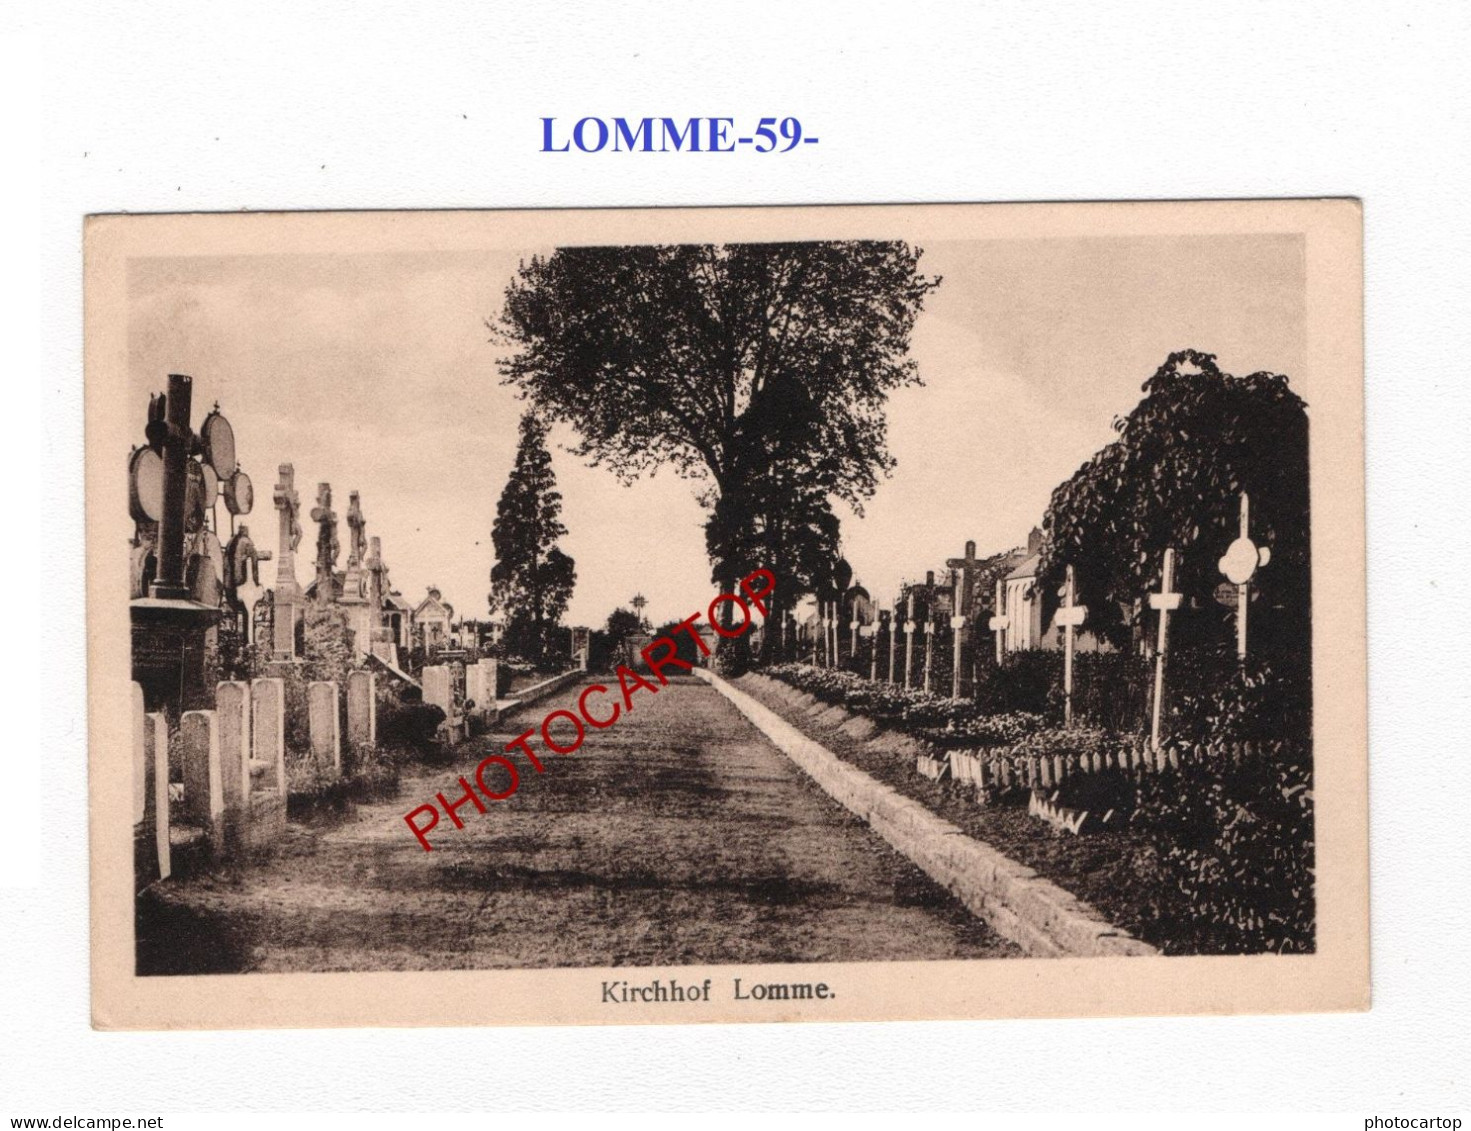 LOMME-59-Tombes-Cimetiere-CARTE Imprimee Allemande-GUERRE 14-18-1 WK-MILITARIA- - Oorlogsbegraafplaatsen